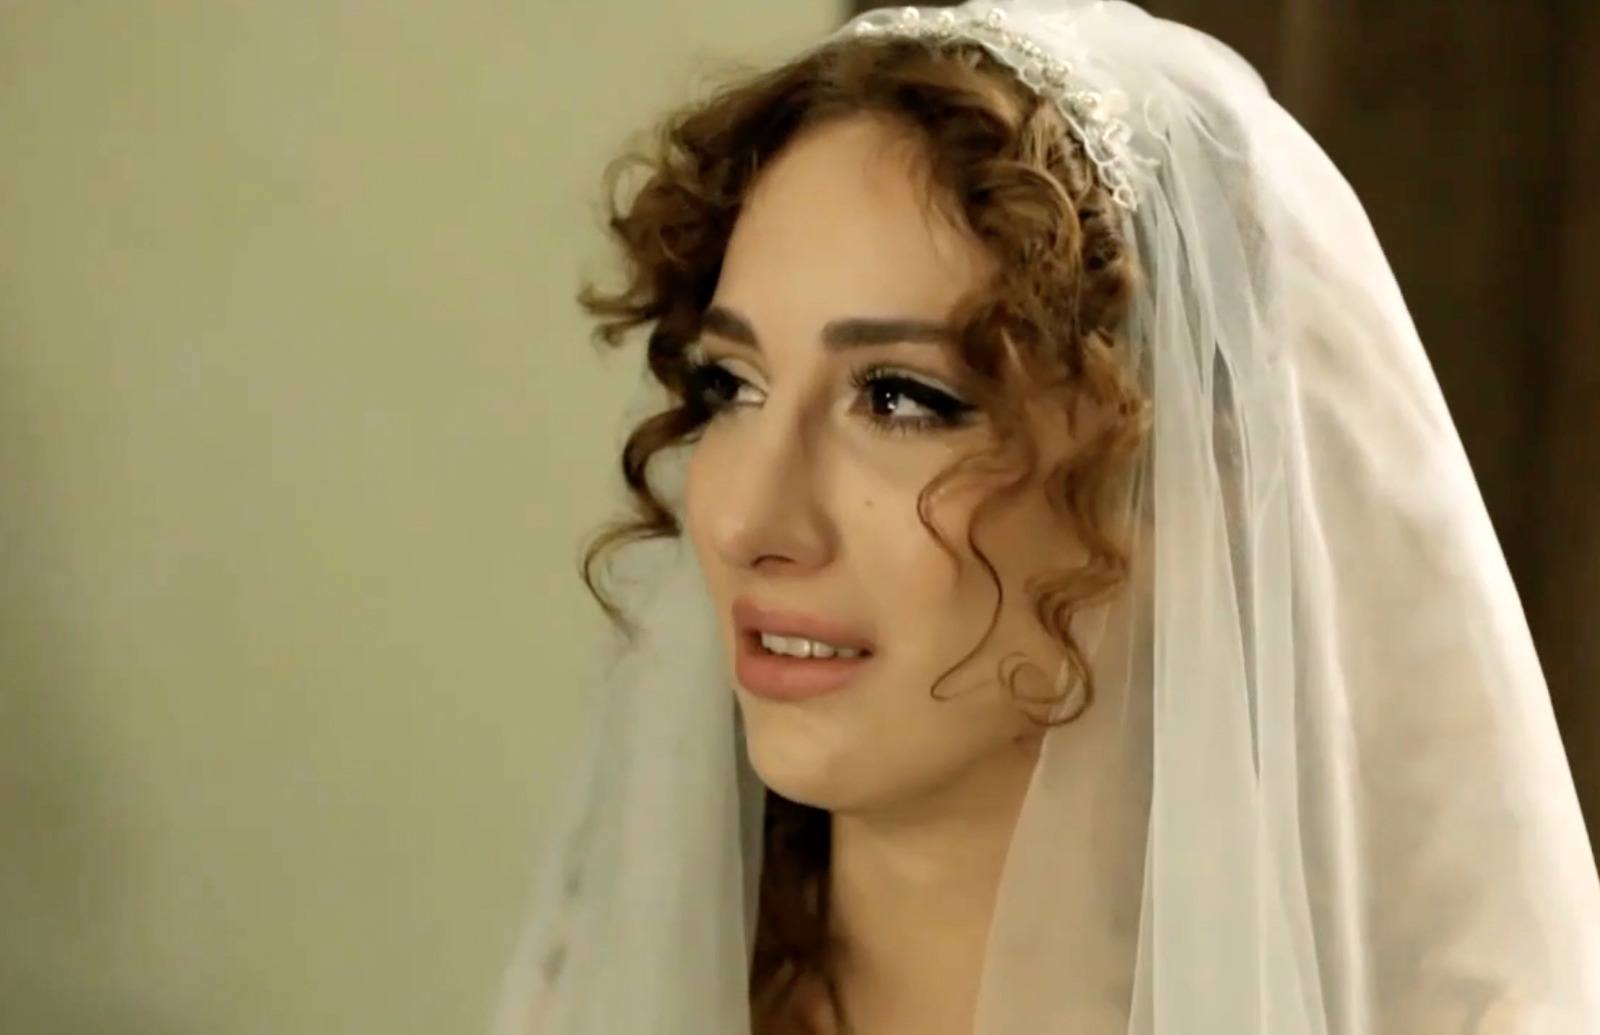 Rashid no llega a la boda y Fadik piensa que en realidad no quería casarse con ella... La joven sirvienta está destrozada